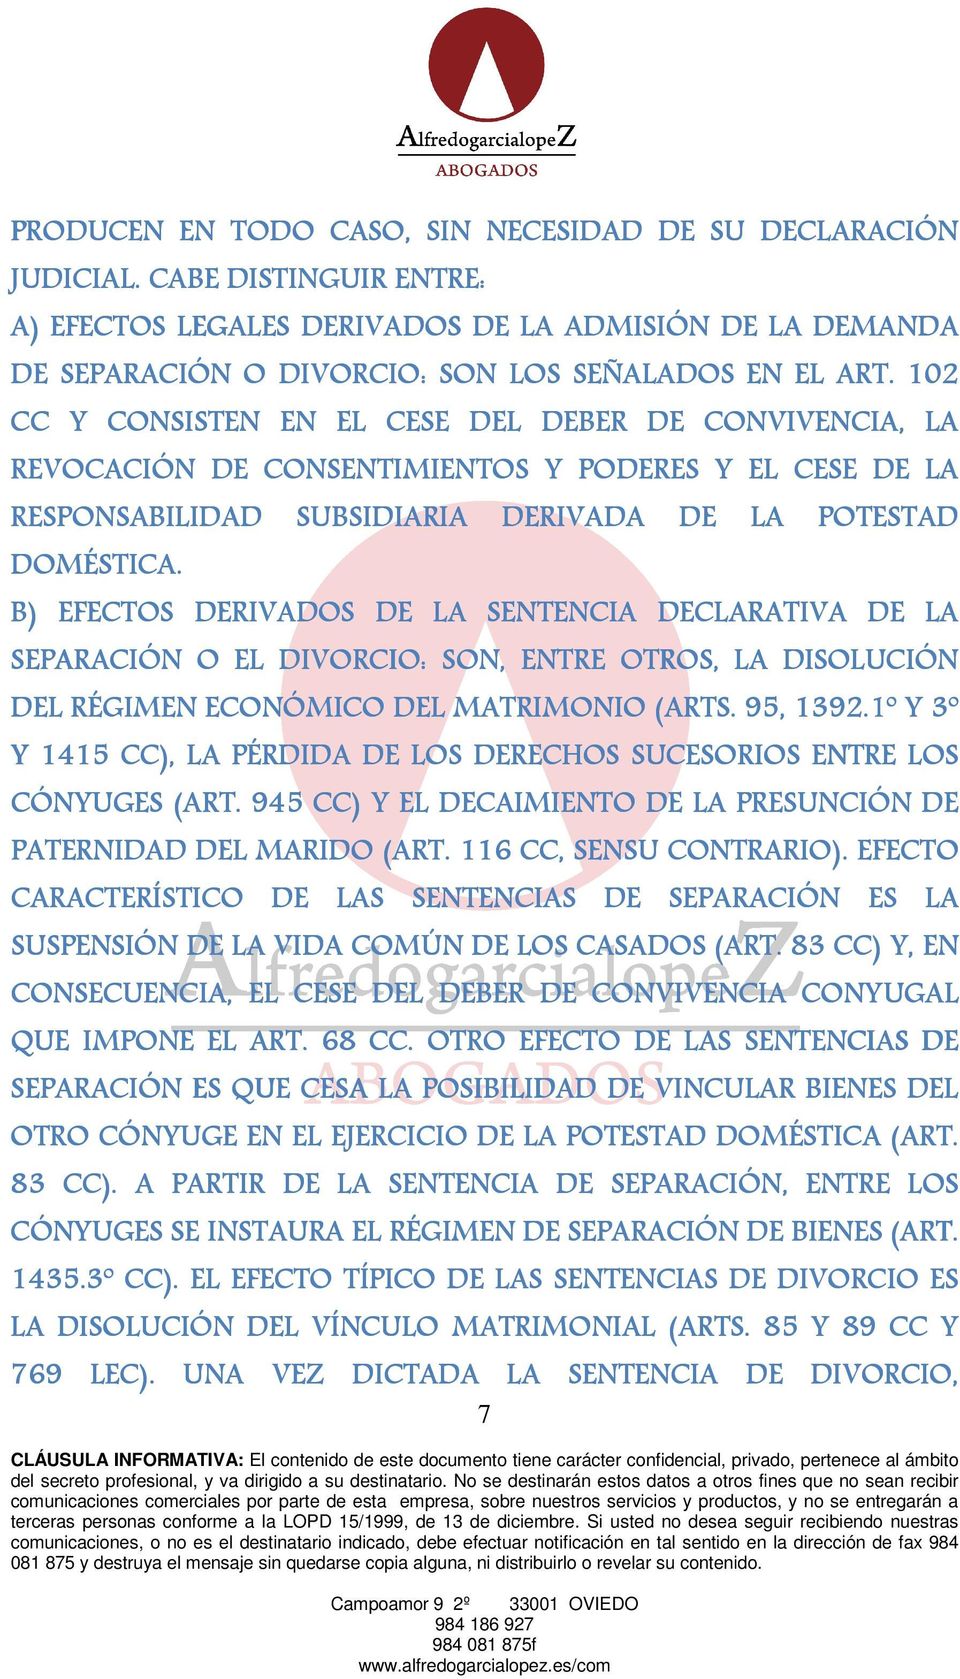 B) EFECTOS DERIVADOS DE LA SENTENCIA DECLARATIVA DE LA SEPARACIÓN O EL DIVORCIO: SON, ENTRE OTROS, LA DISOLUCIÓN DEL RÉGIMEN ECONÓMICO DEL MATRIMONIO (ARTS. 95, 1392.